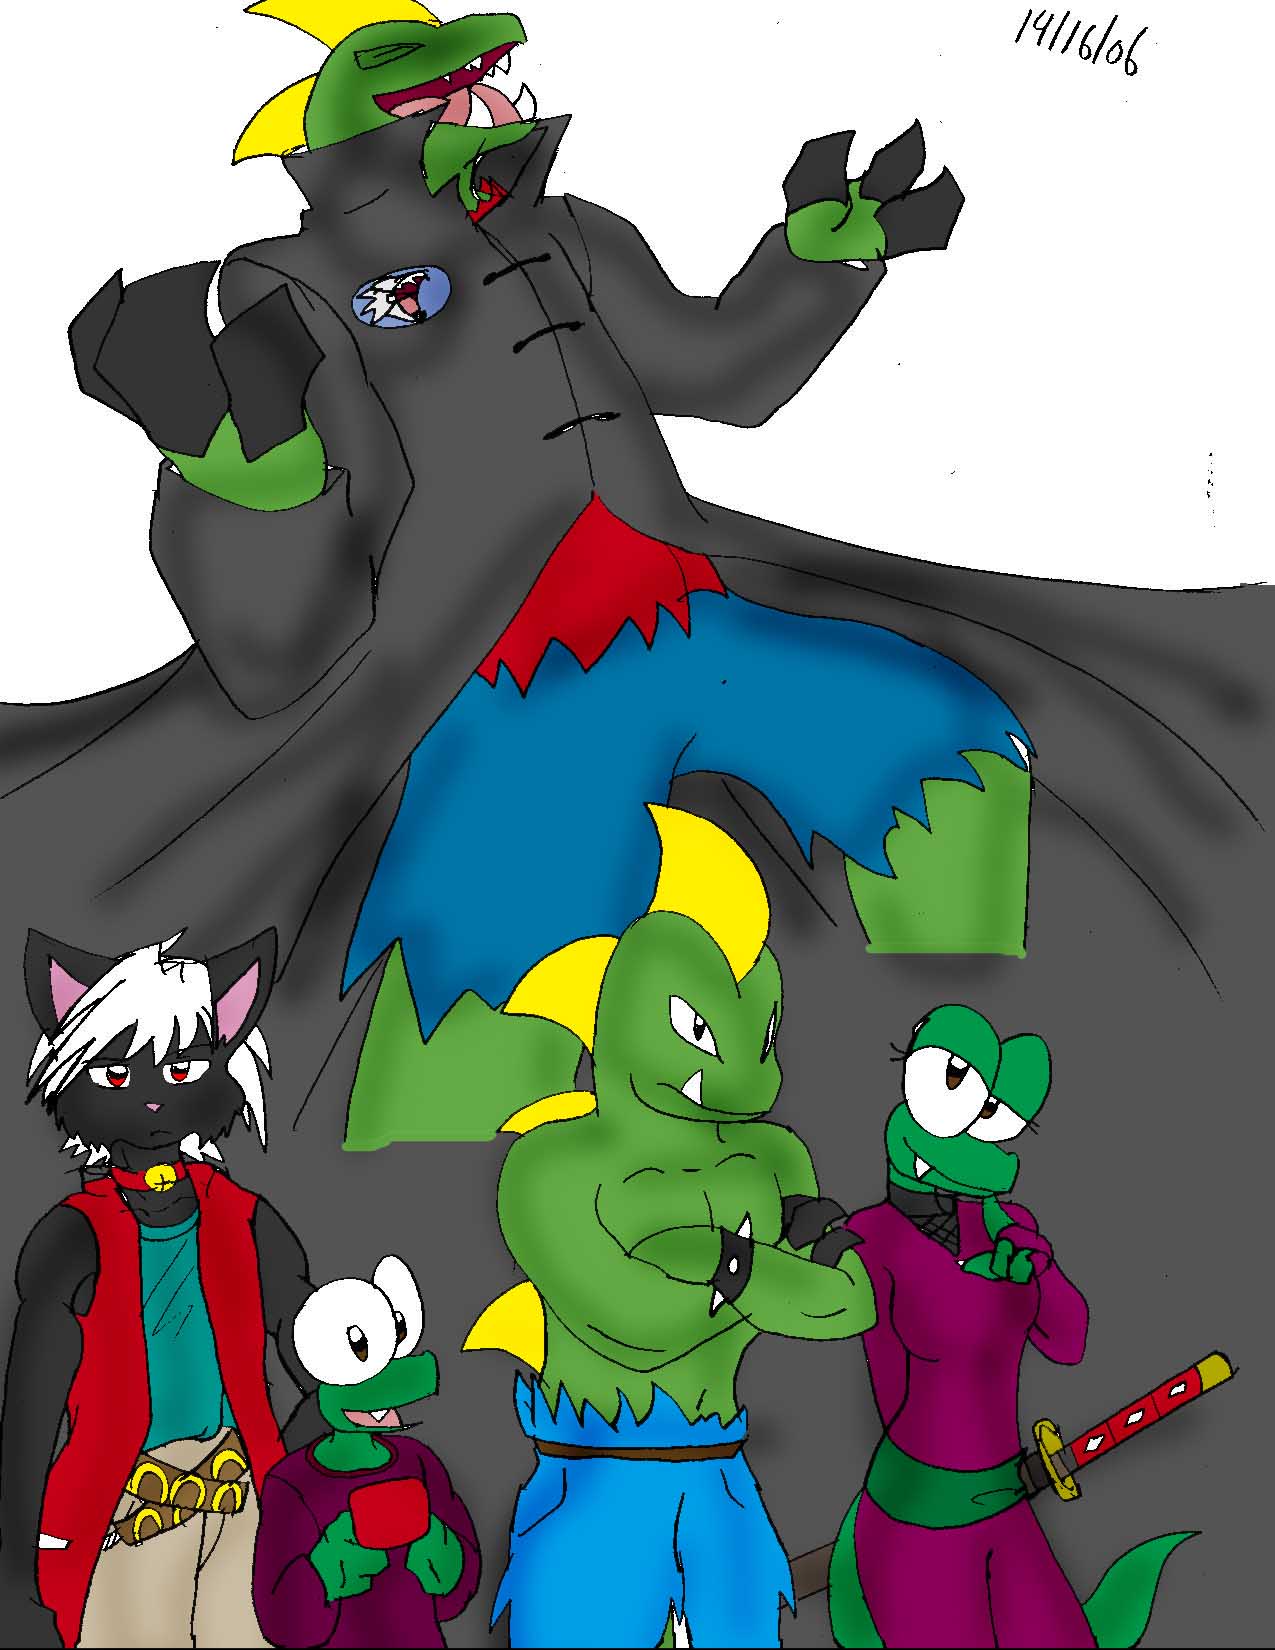 The Dark Alliance by crocdragon89